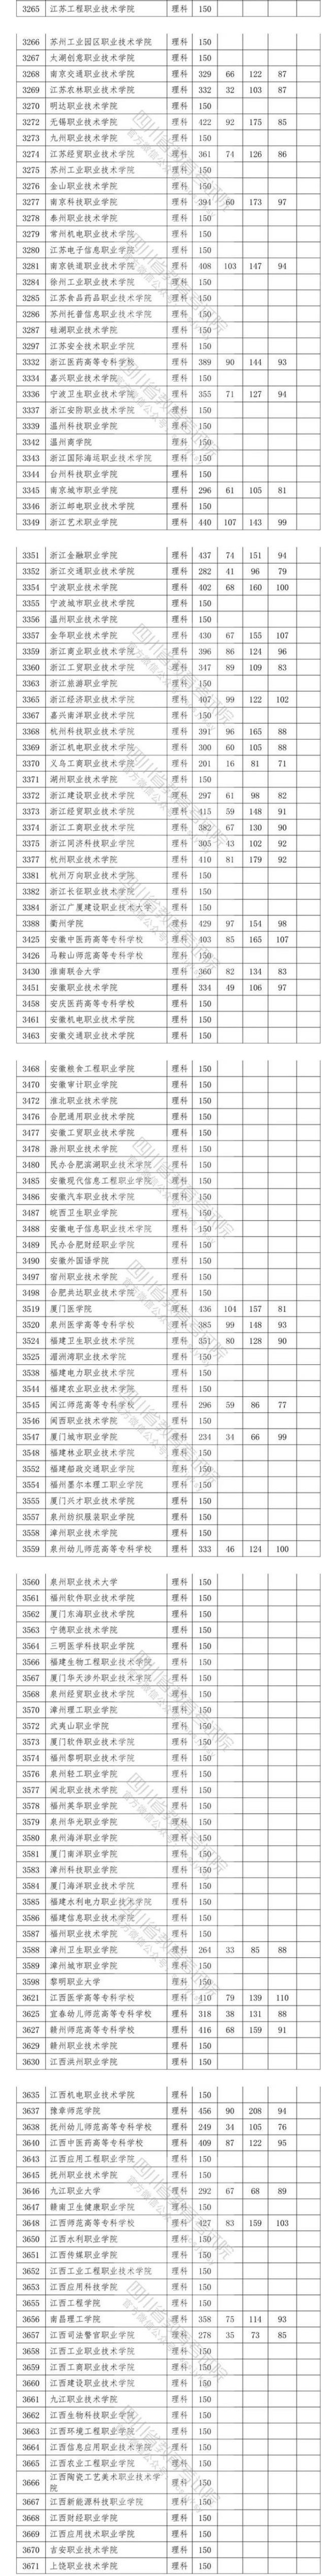 2020四川高考专科院校投档分数线及相关院校代码